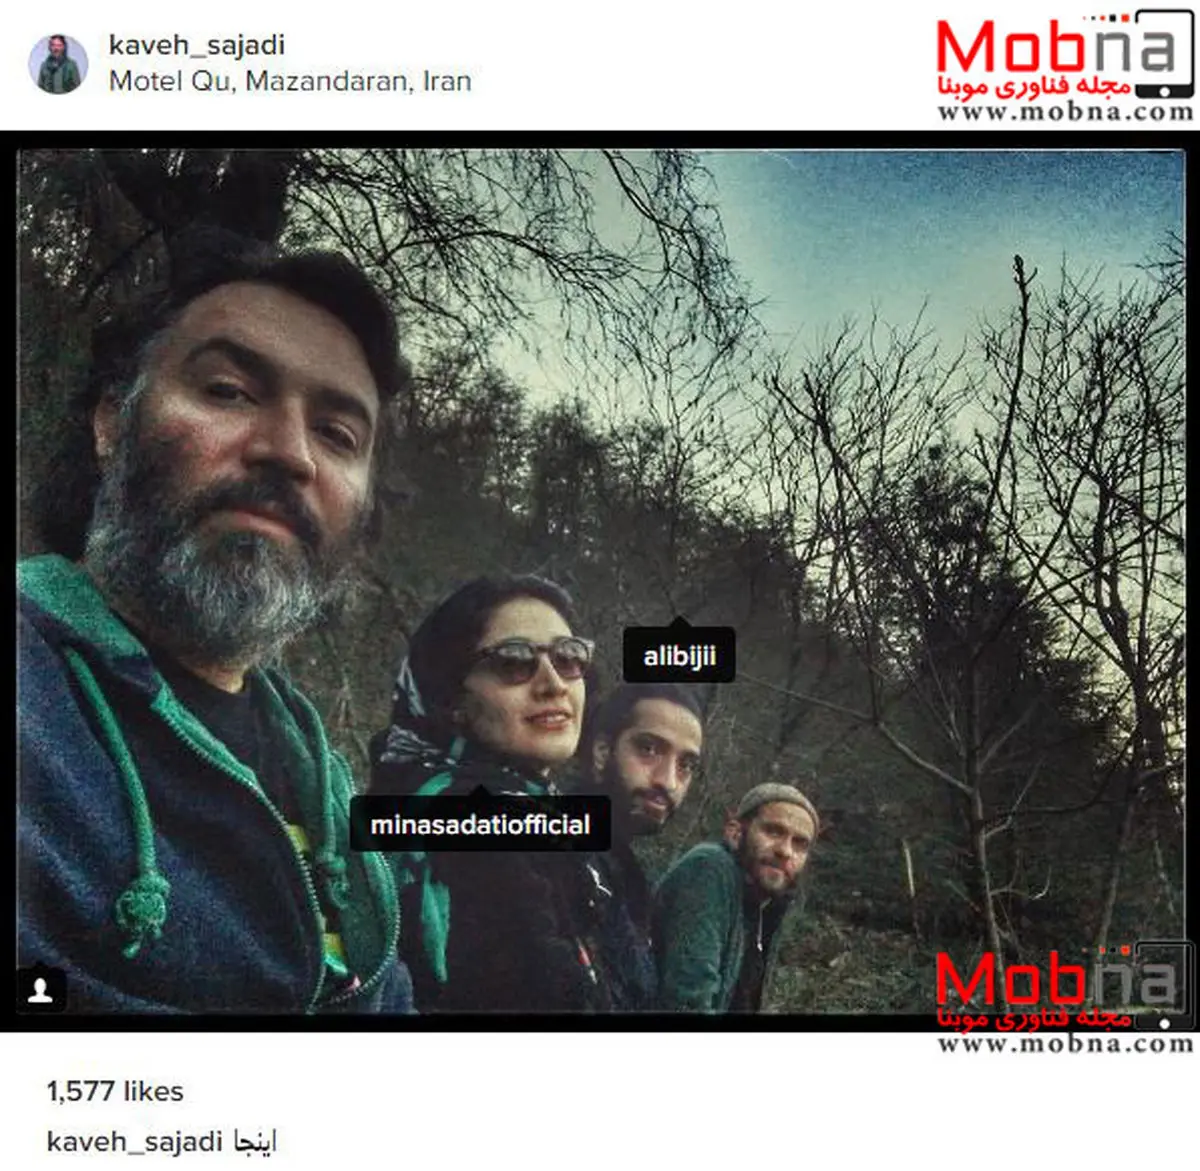 سلفی مینا ساداتی و دوستانش در متل قو (عکس)
